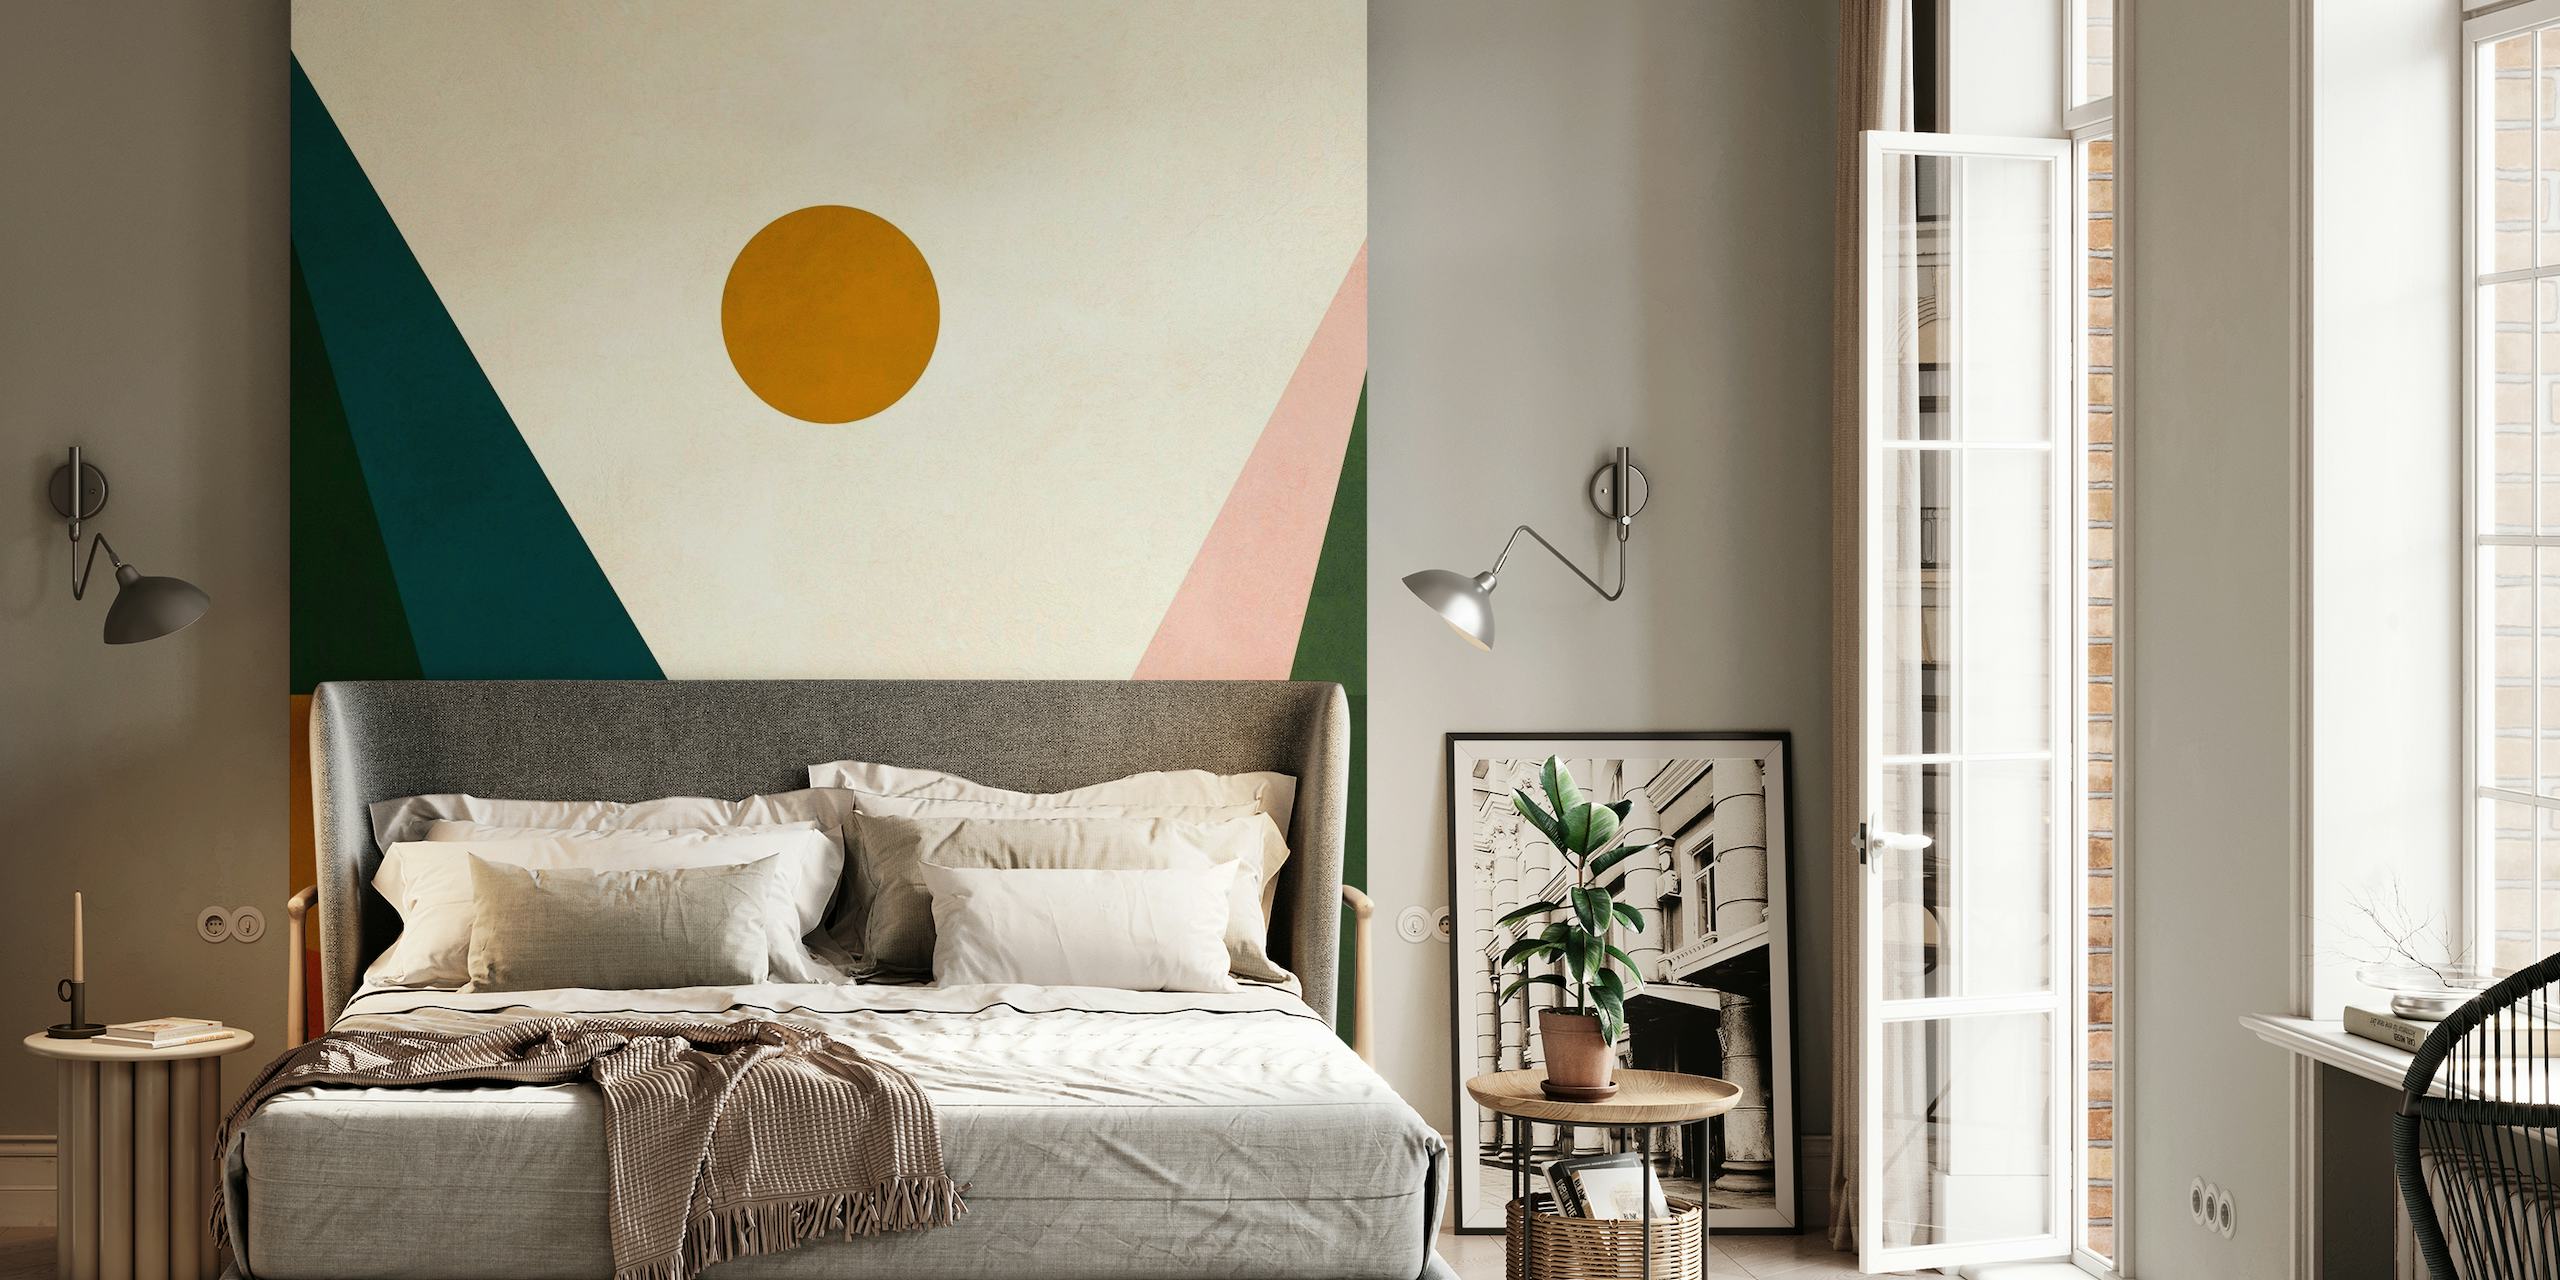 Abstract geometrisch aquarelbehang met aardse groentinten, warme sinaasappels en koele blauwtinten met een centrale gouden cirkel